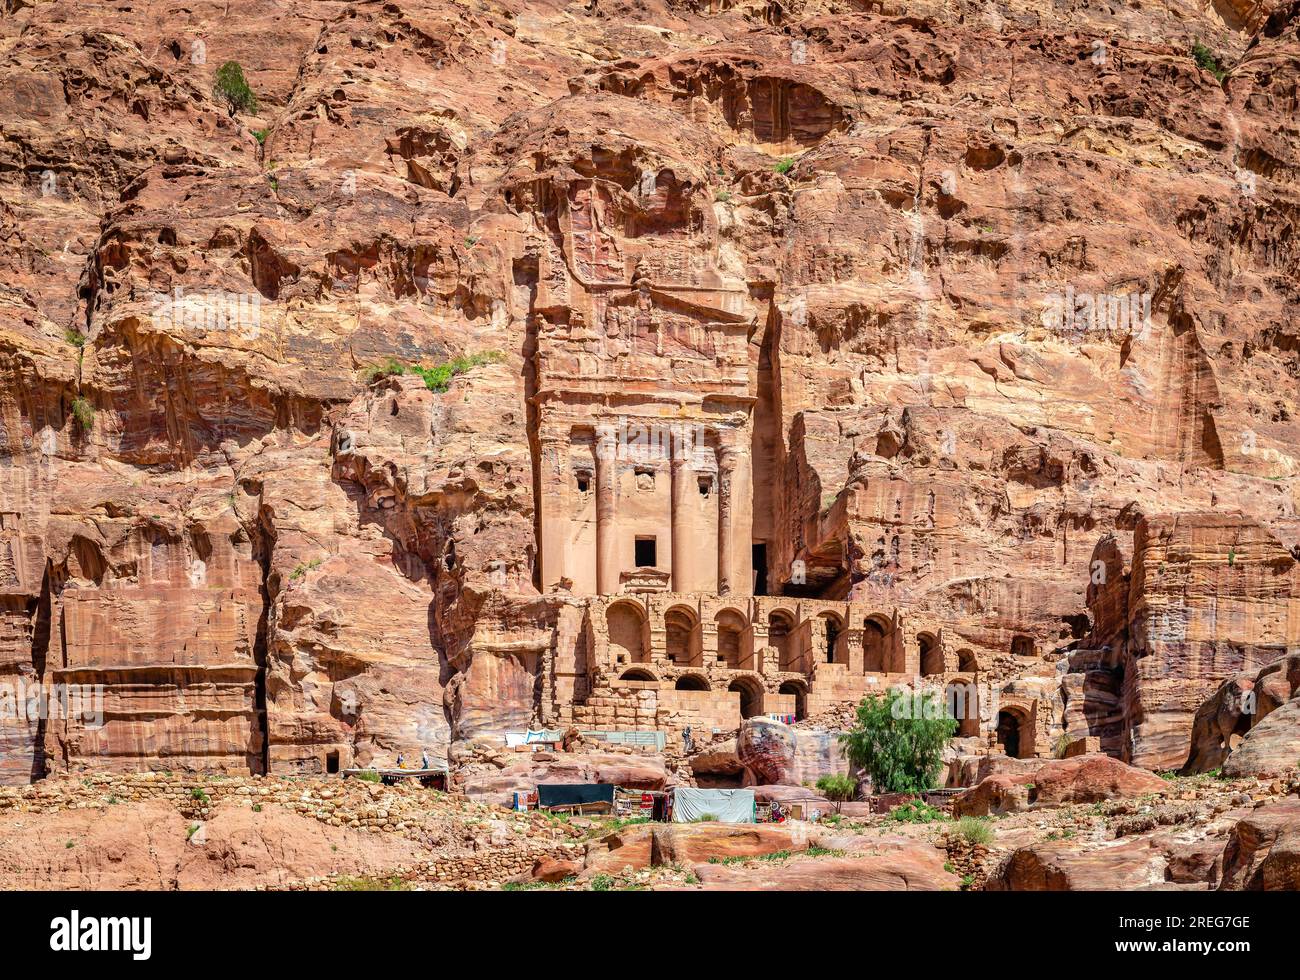 Les tombes royales, une série de grands mausolées sculptés aux façades impressionnantes surplombant la ville antique de Pétra, en Jordanie. Banque D'Images